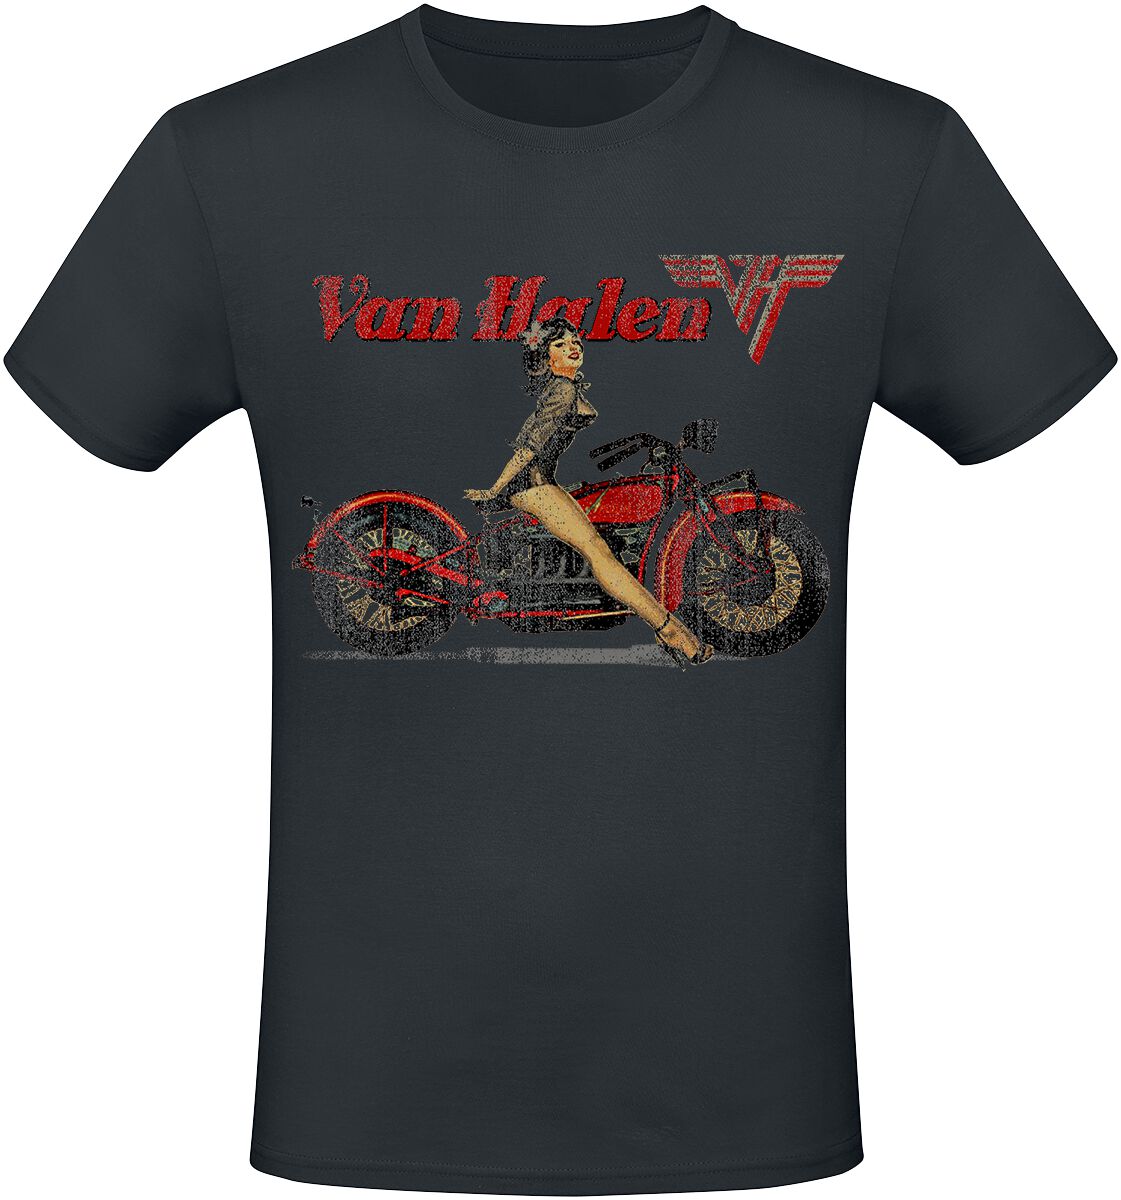 Van Halen T-Shirt - Pinup Motorcycle - S bis 3XL - für Männer - Größe S - schwarz  - Lizenziertes Merchandise!